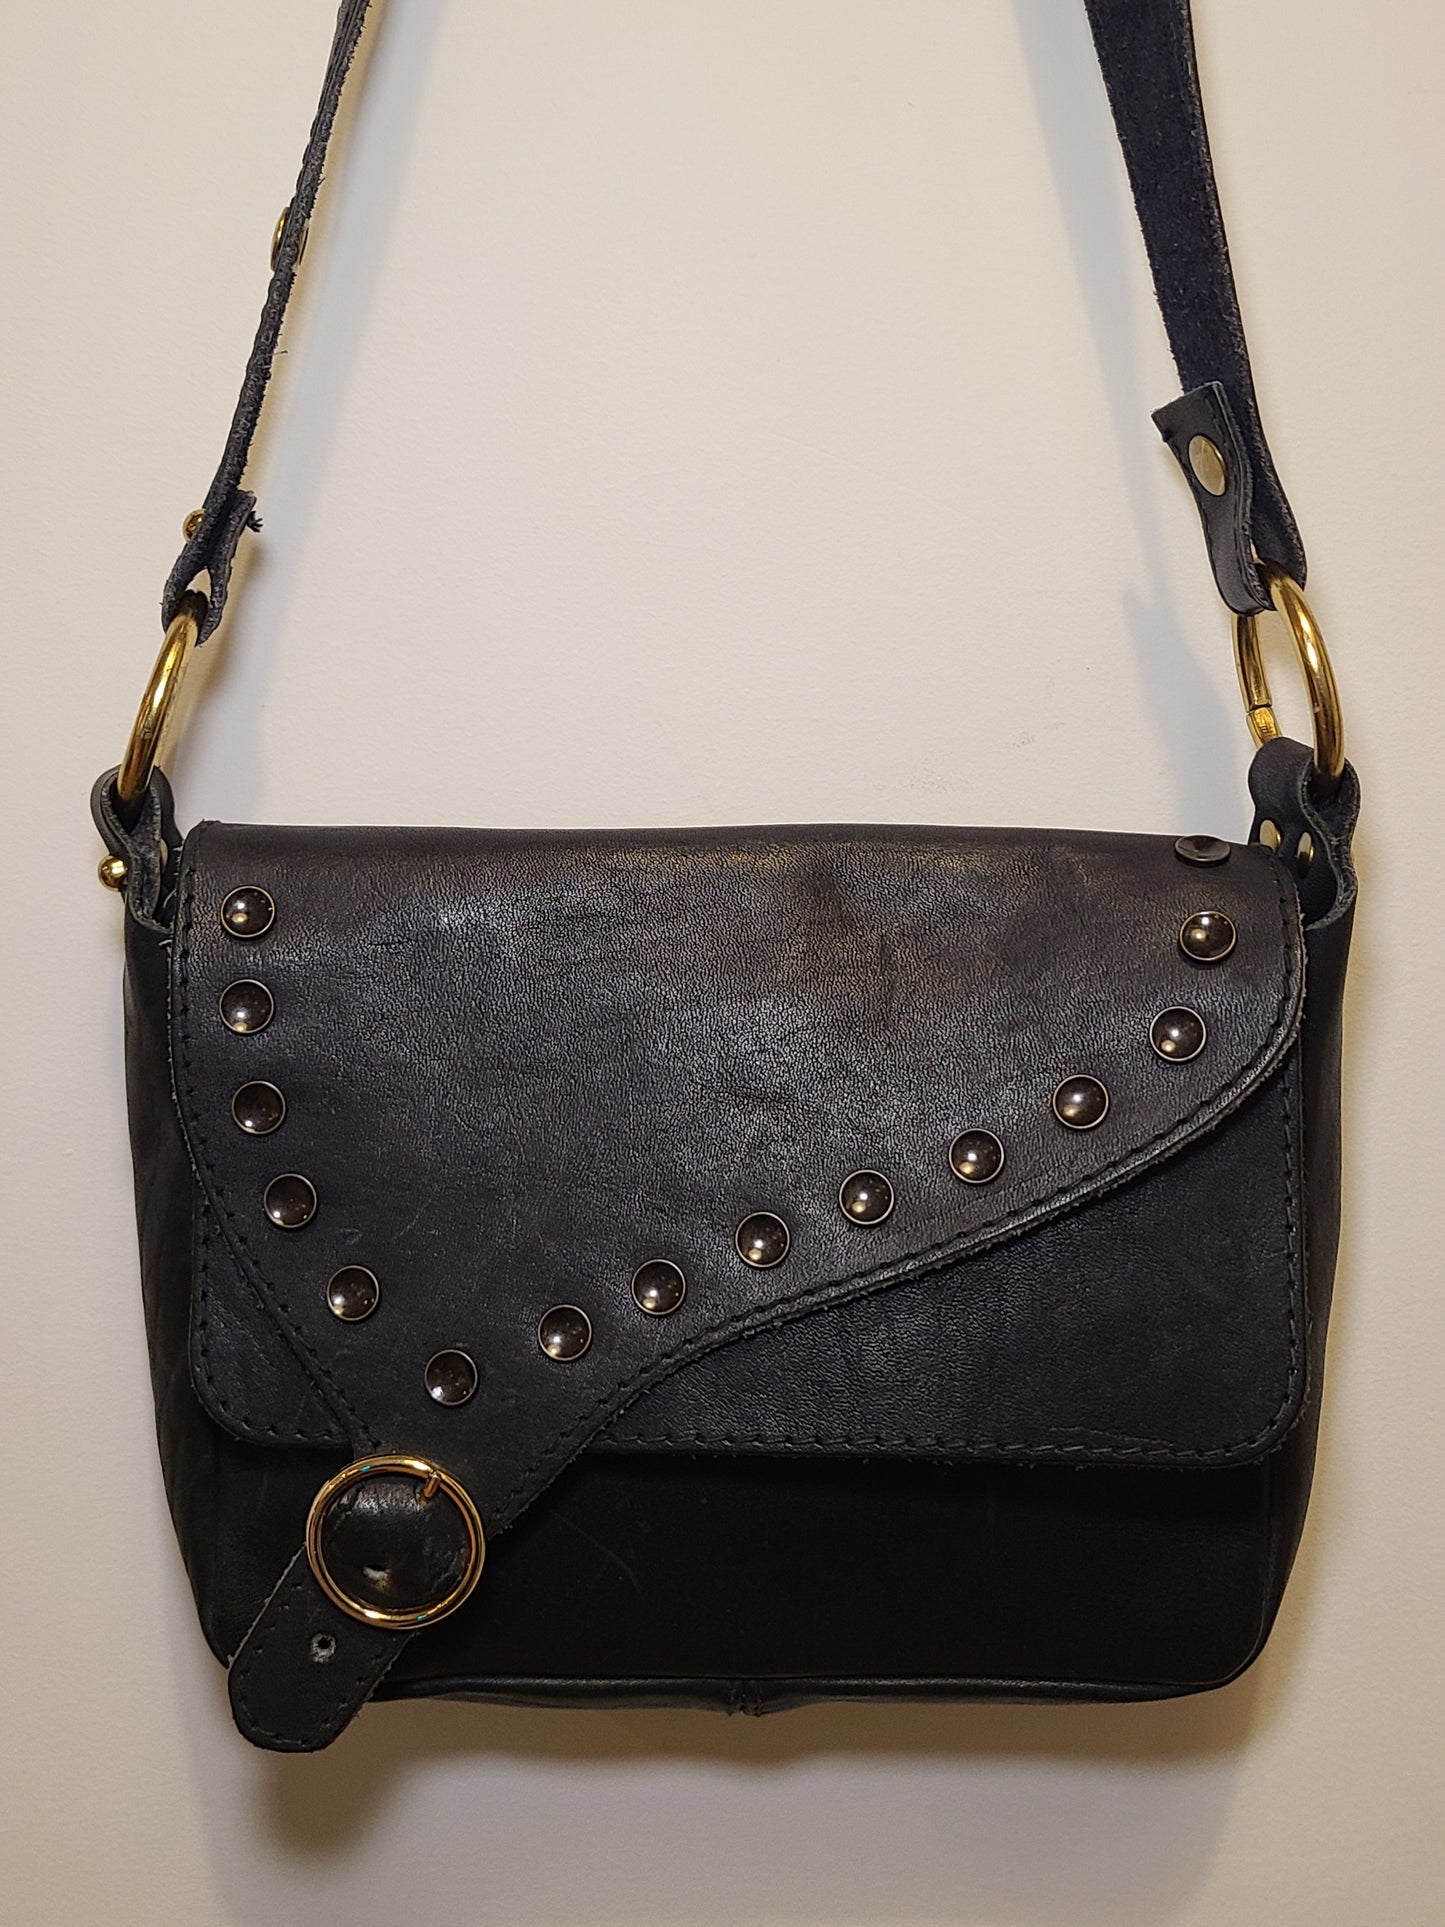 Vintage 1960s Navy Leather Shoulder Bag Re-Imagined